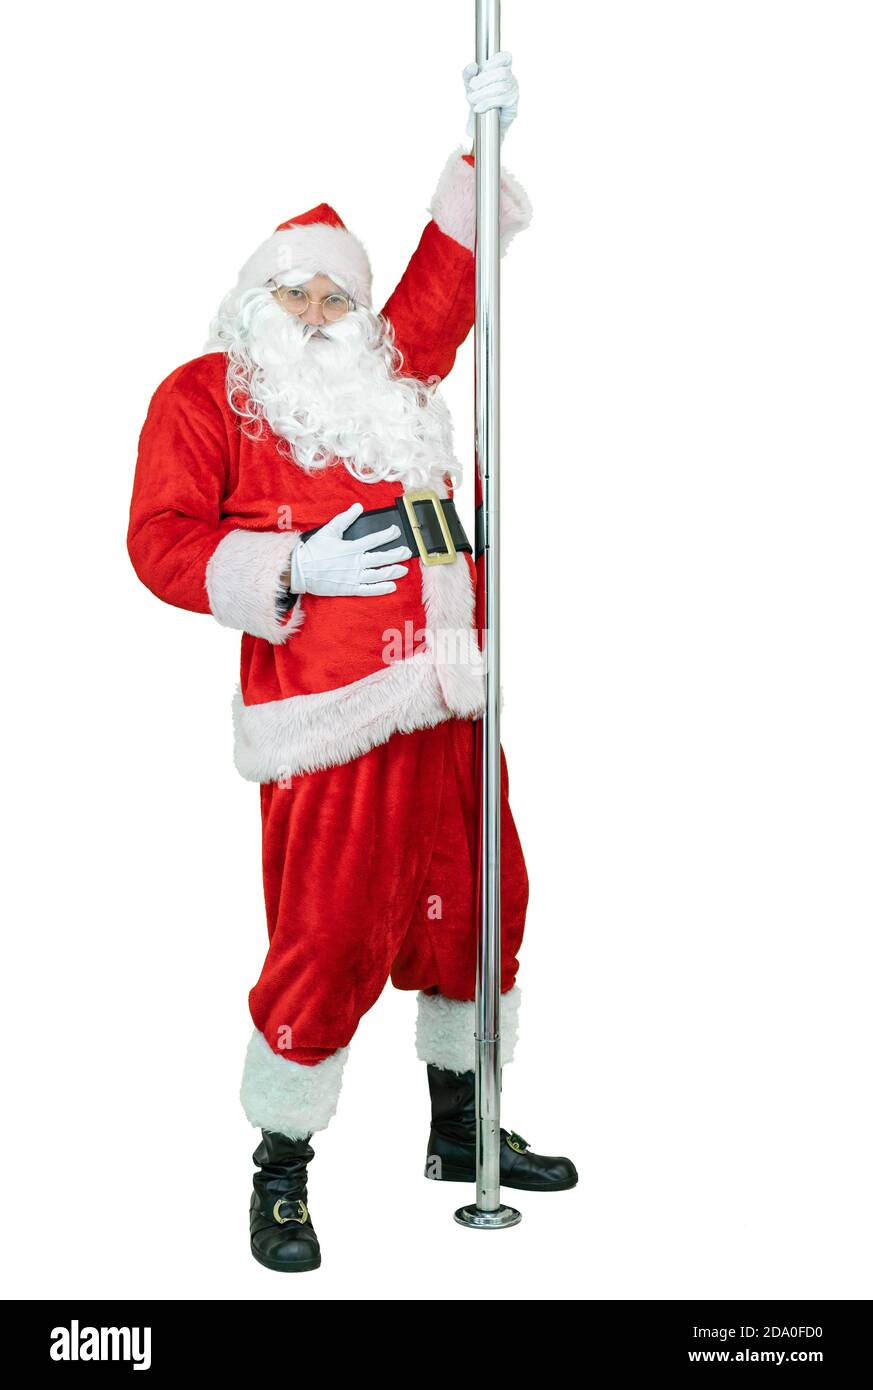 Babbo Natale è ballerina di palo, ballando con pilone. Divertenti balli di Babbo Natale con palo su sfondo bianco. Natale in arrivo Foto Stock